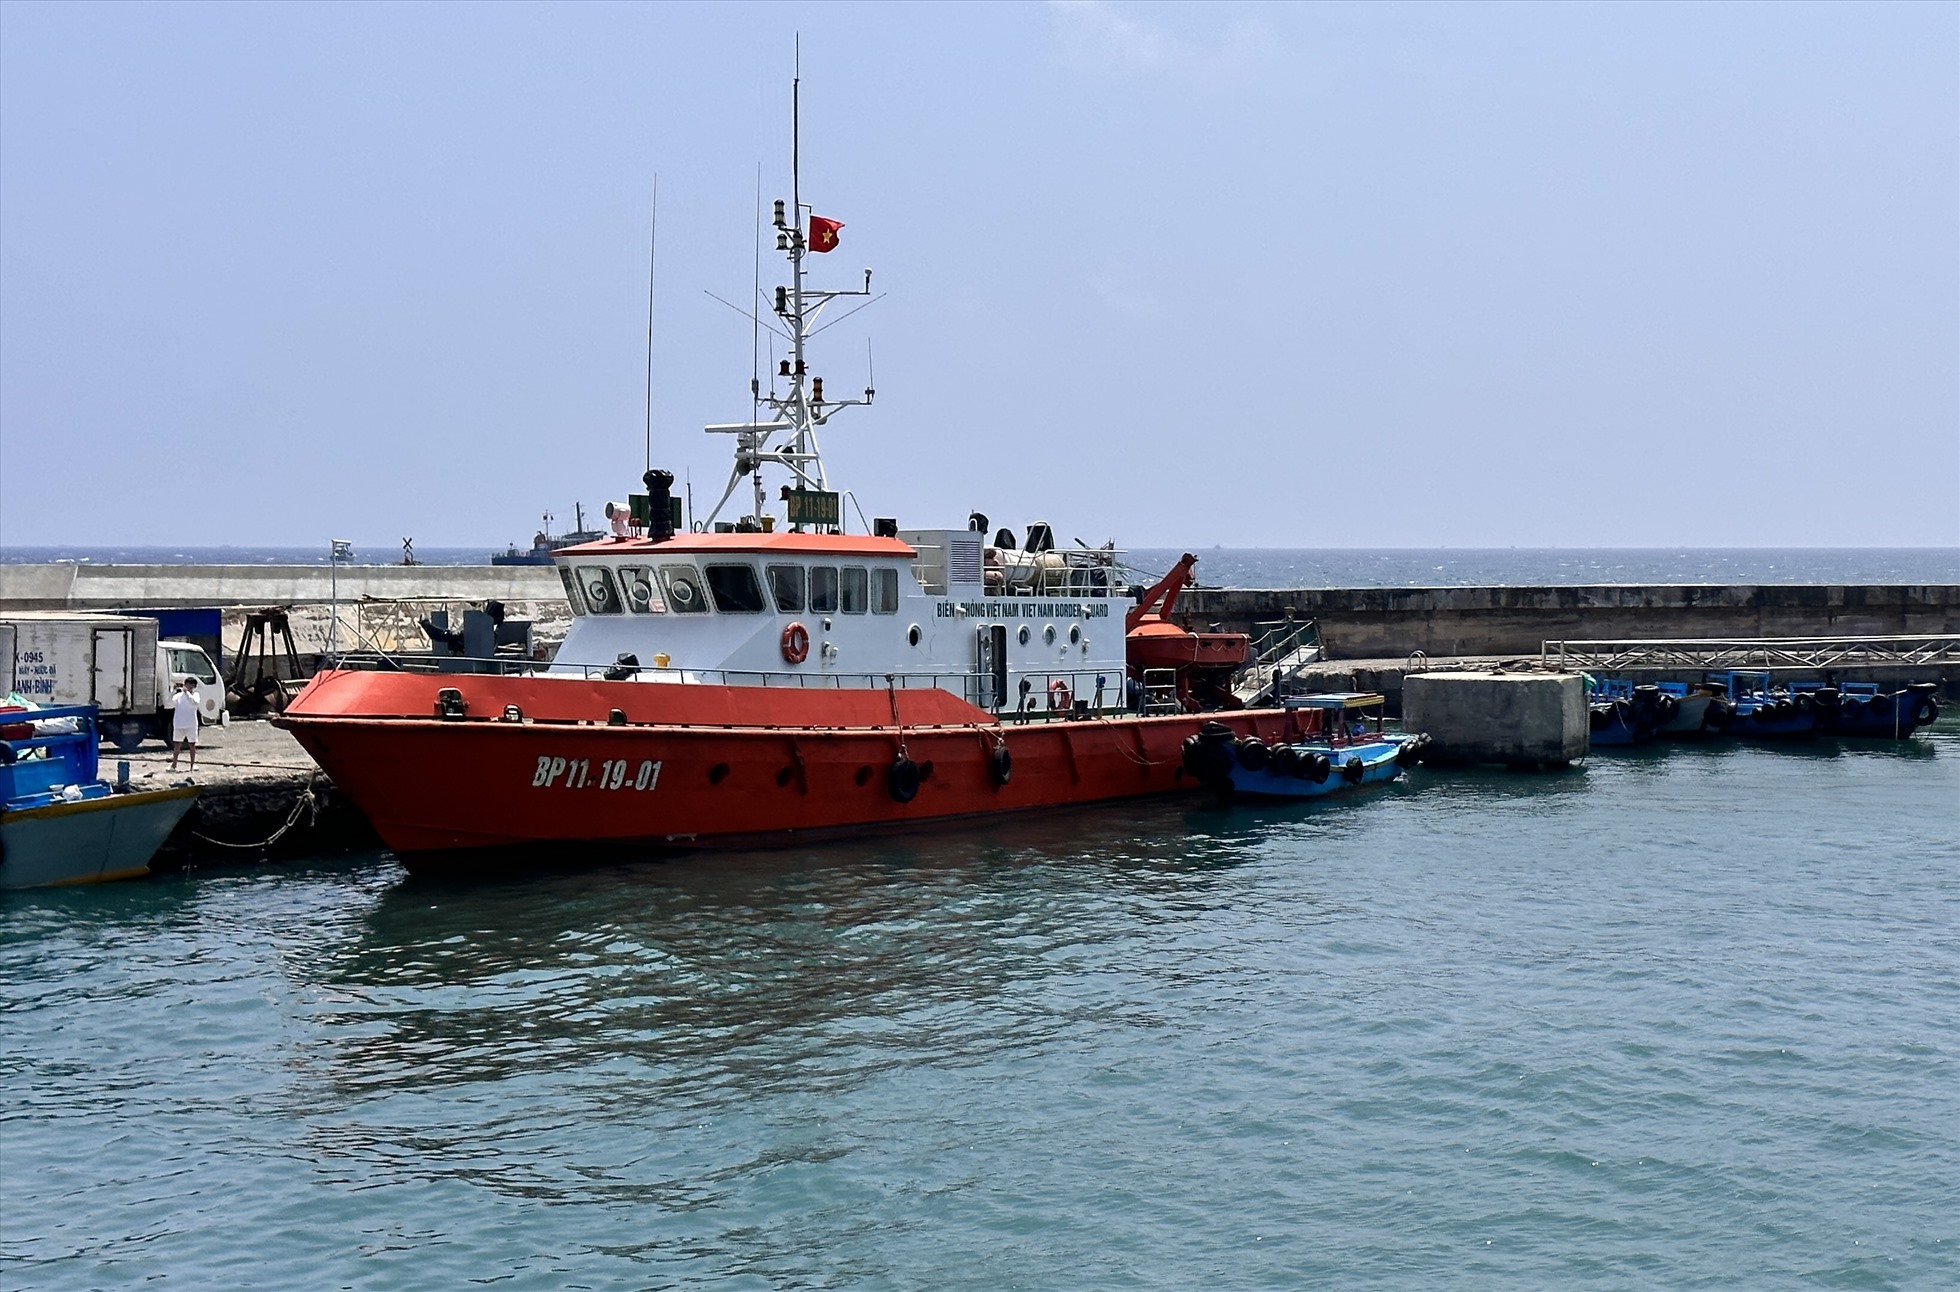 Tàu BP 11-19-01 neo đậu ở cảng Phú Quý xuất phát ra hiện trường tìm kiếm. Ảnh: Duy Tuấn